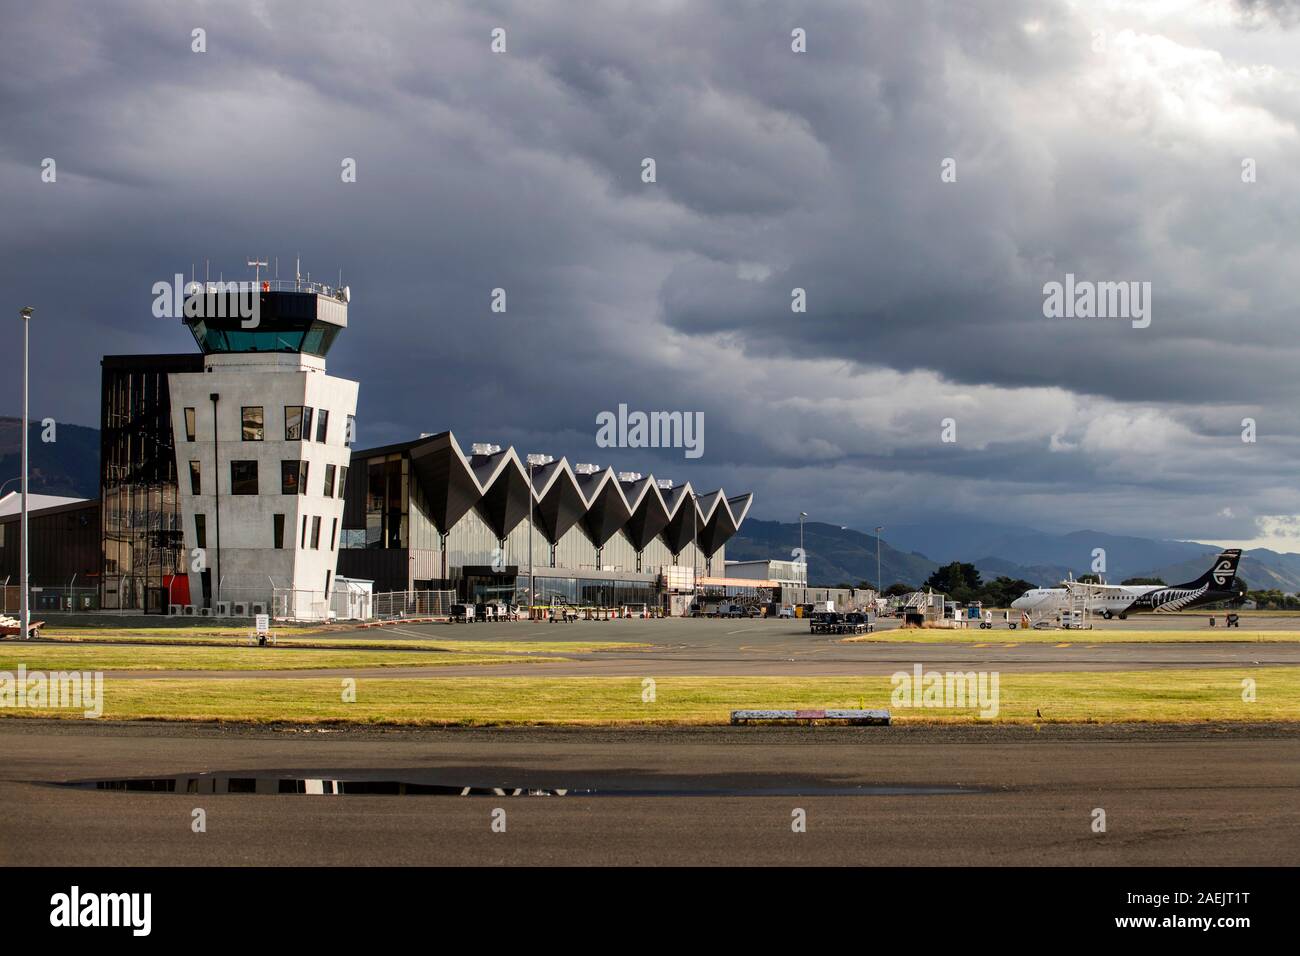 Photo par Tim Cuff - 9 décembre 2019 - L'aéroport de Nelson, Nouvelle-Zélande Banque D'Images